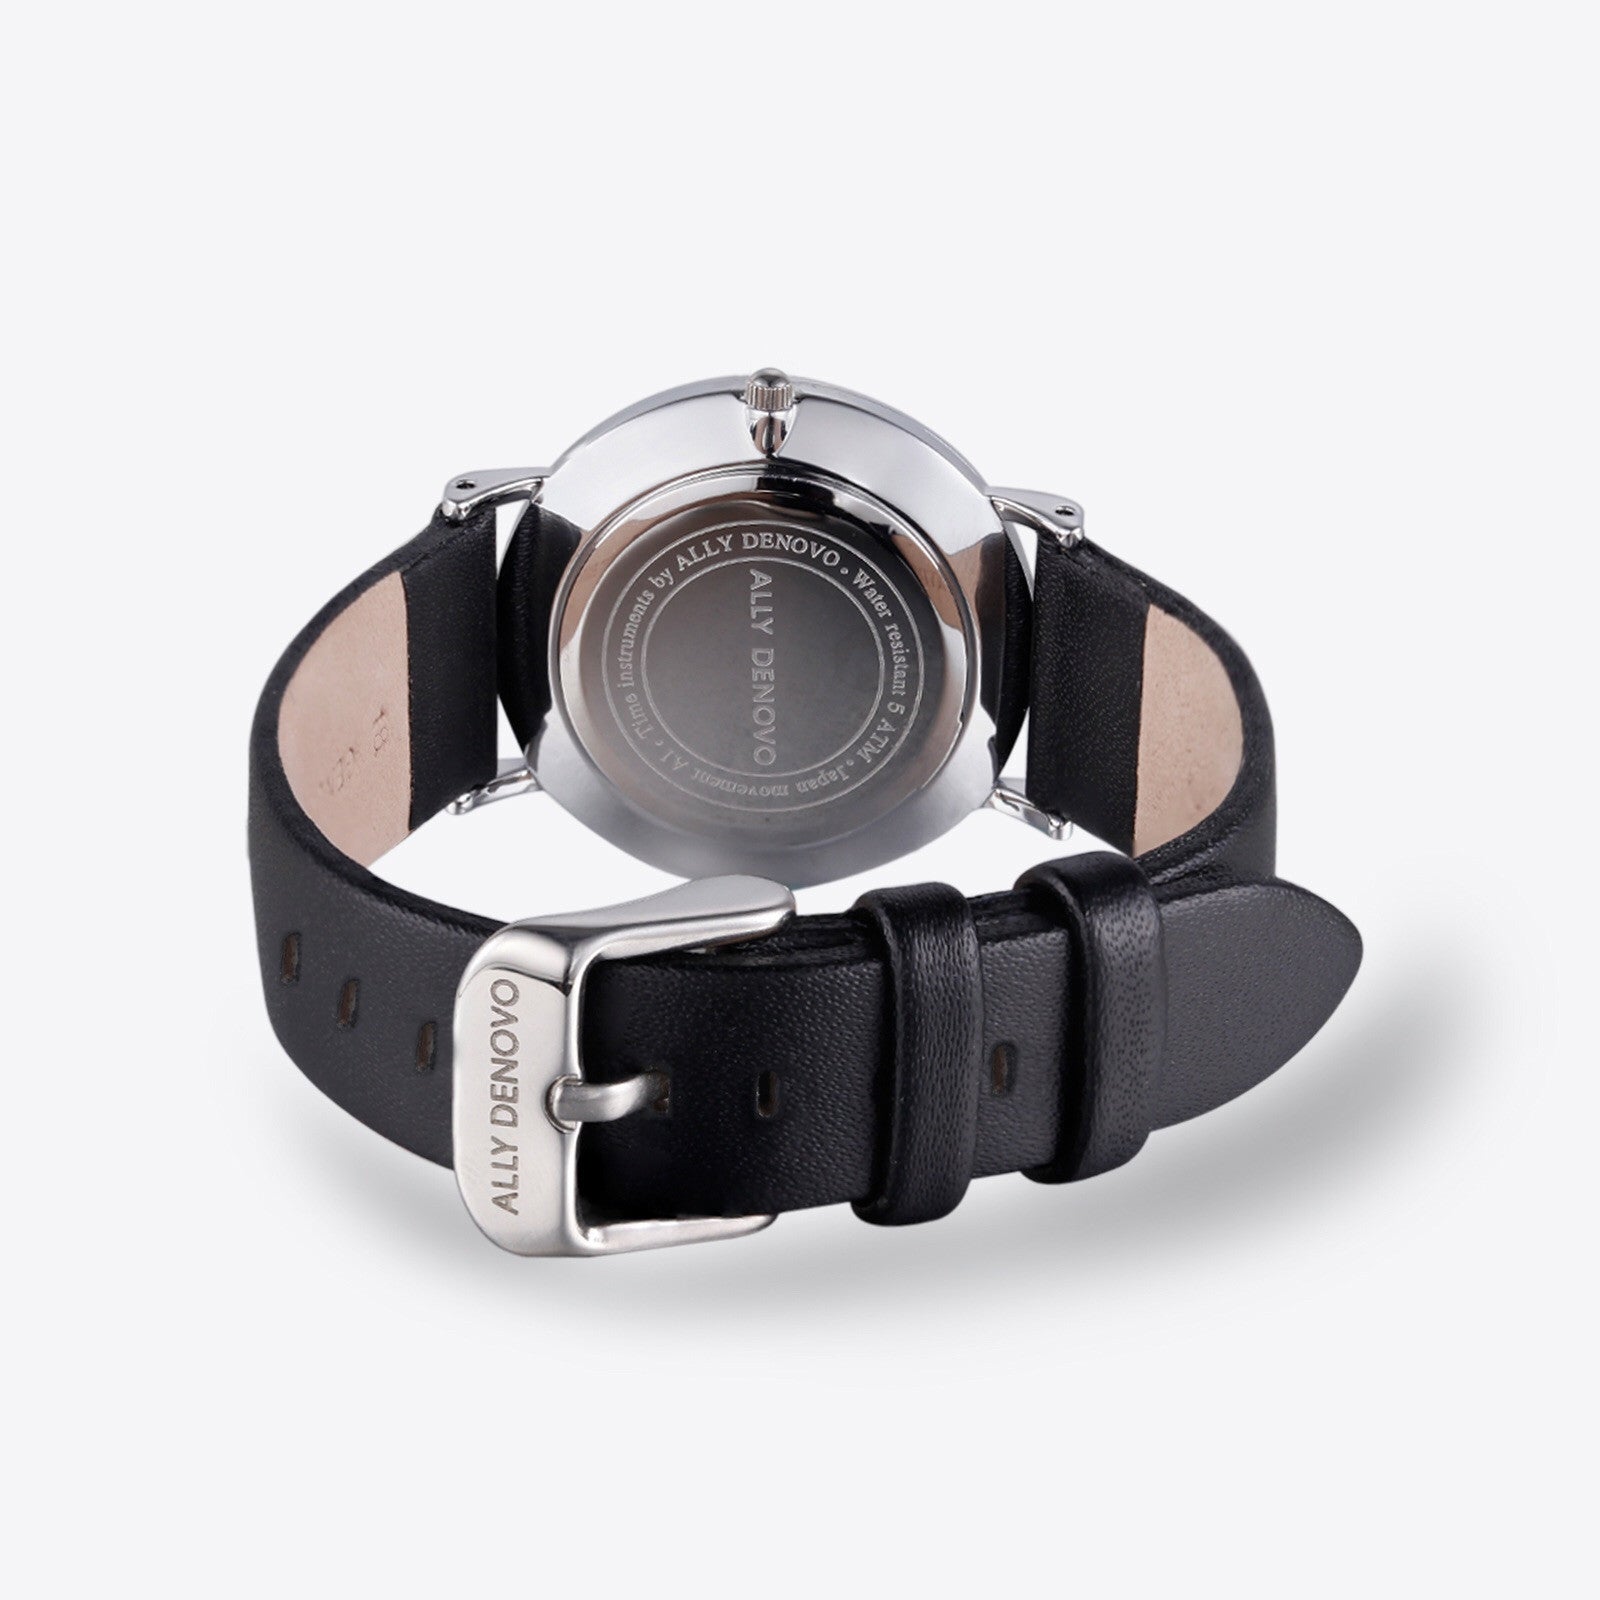 【男款】Carrara Marble皮革腕錶-白大理石銀框黑真皮錶帶 AM5010.1